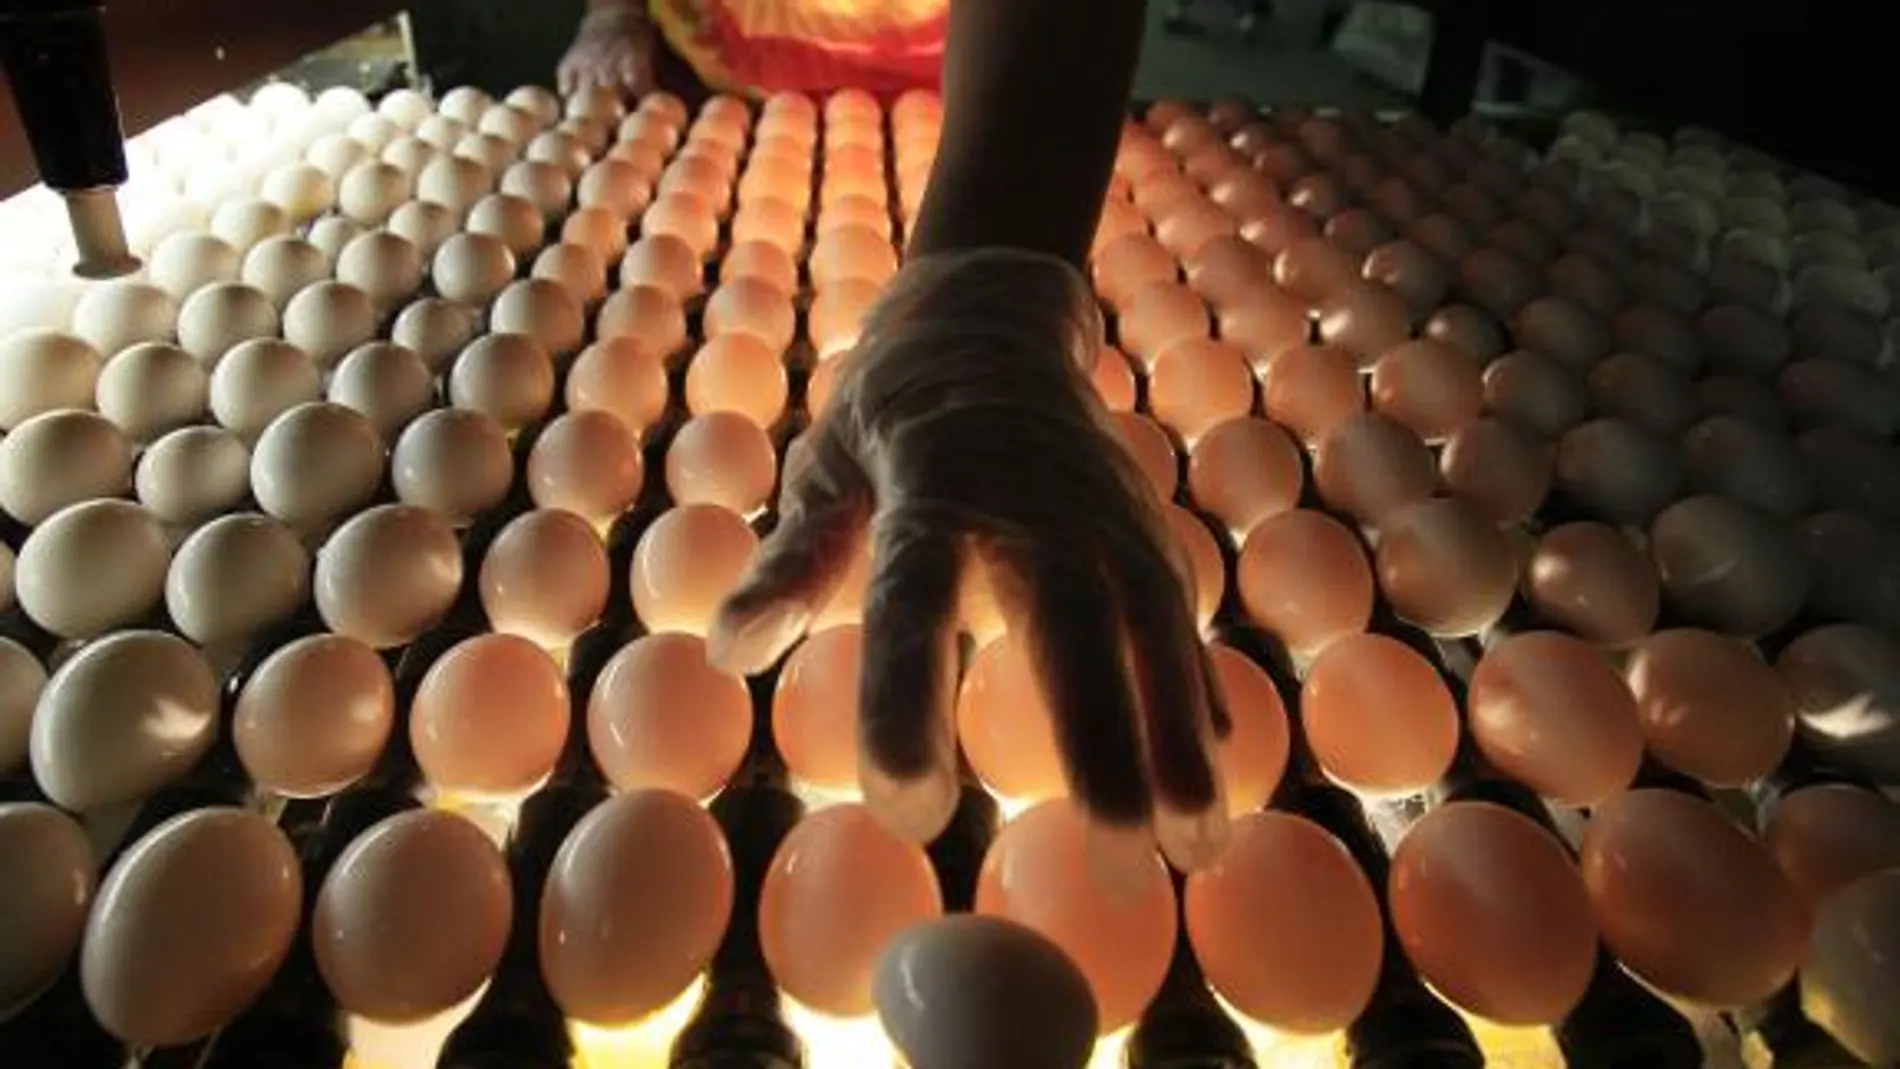 Los huevos de ahora tienen menos colesterol y más vitamina D que hace 10 años